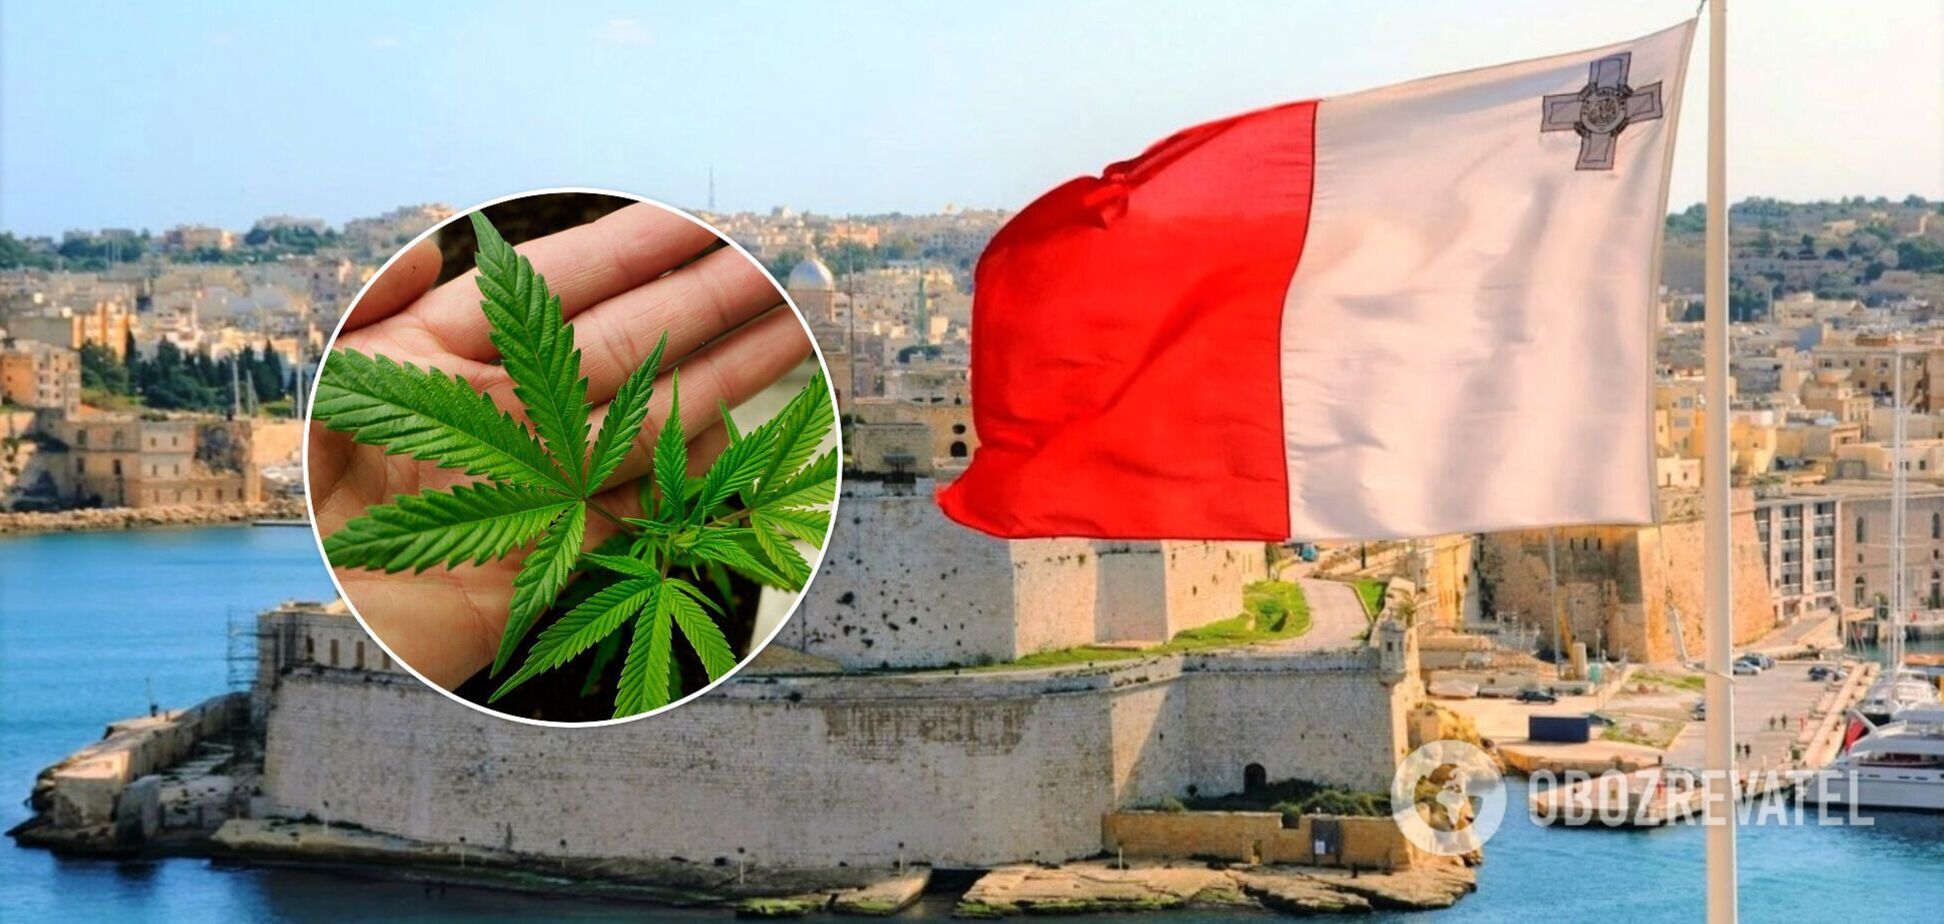 Мальта первой в ЕС легализировала каннабис для личного пользования